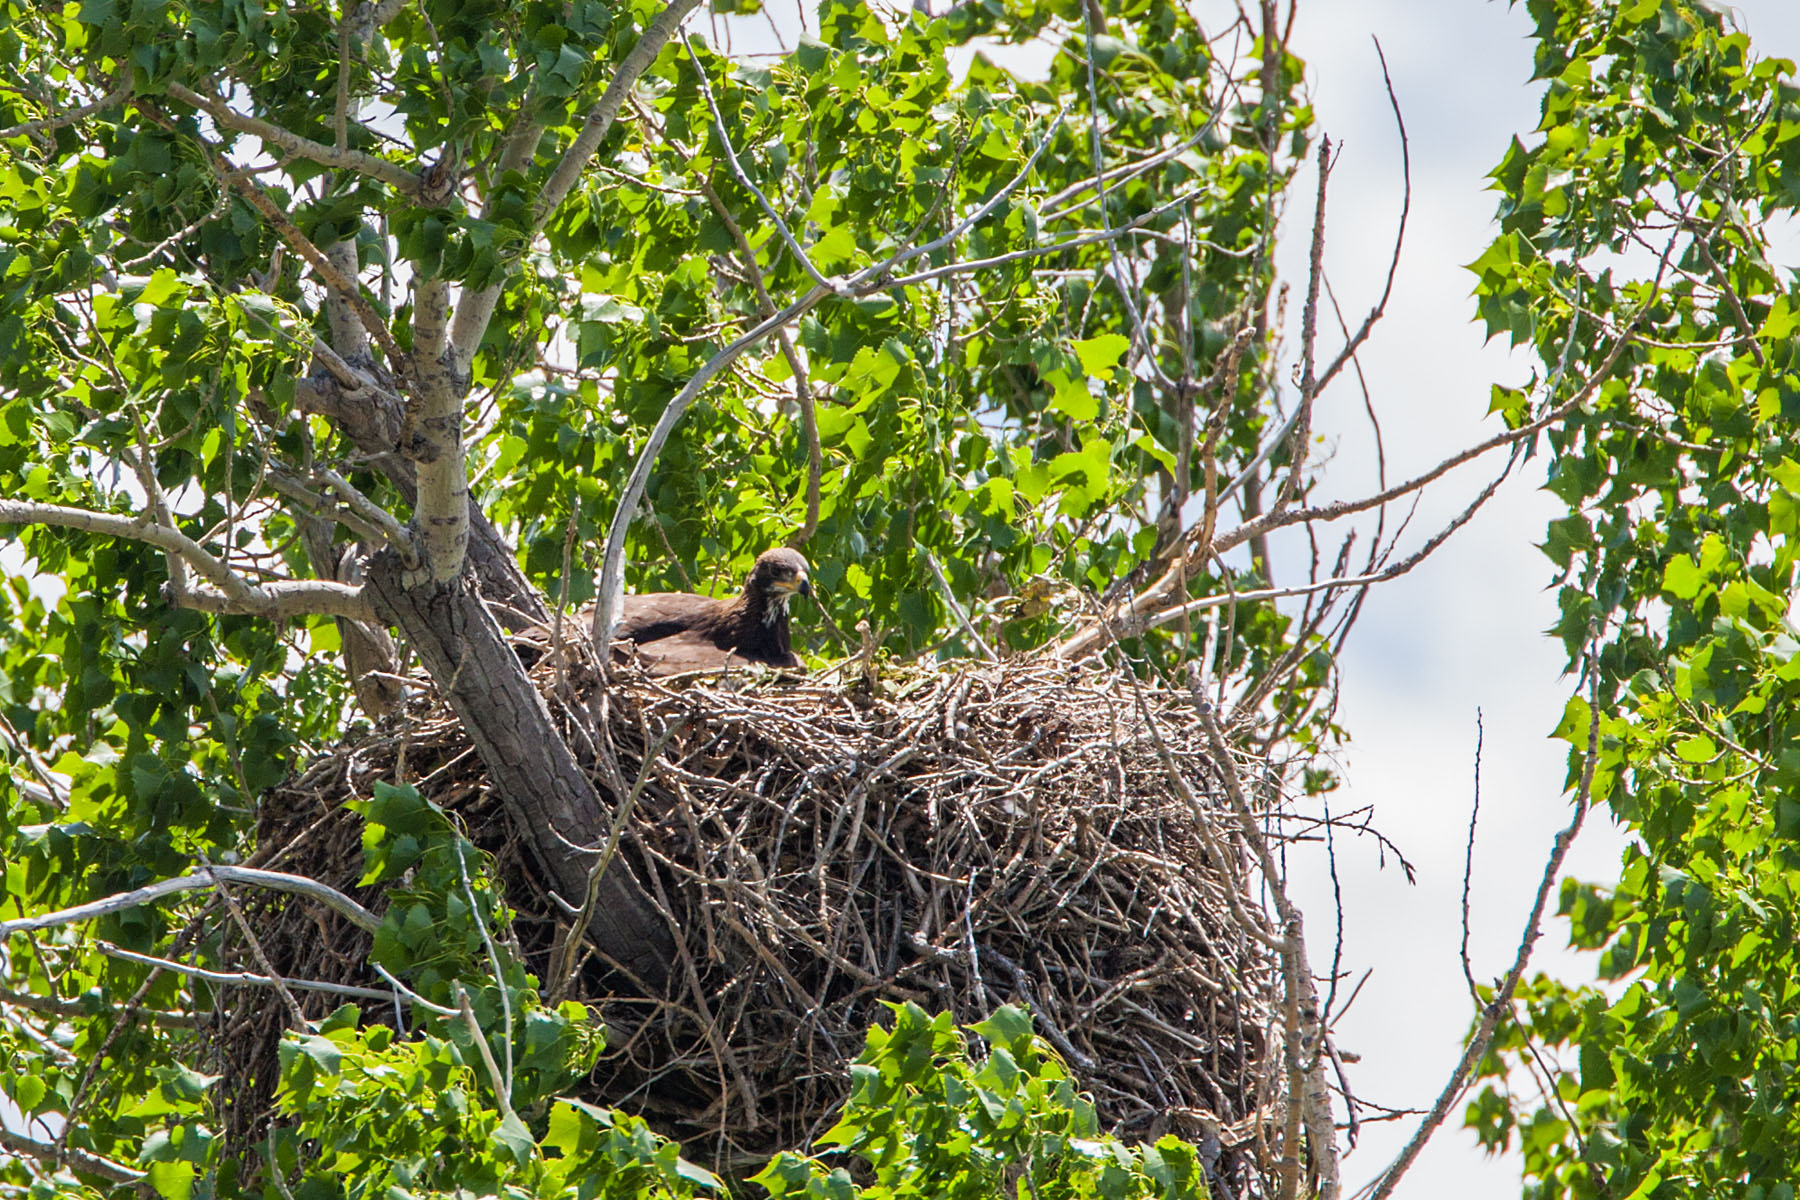 Golden eagle in nest near Quinn, South Dakota.  Click for next photo.